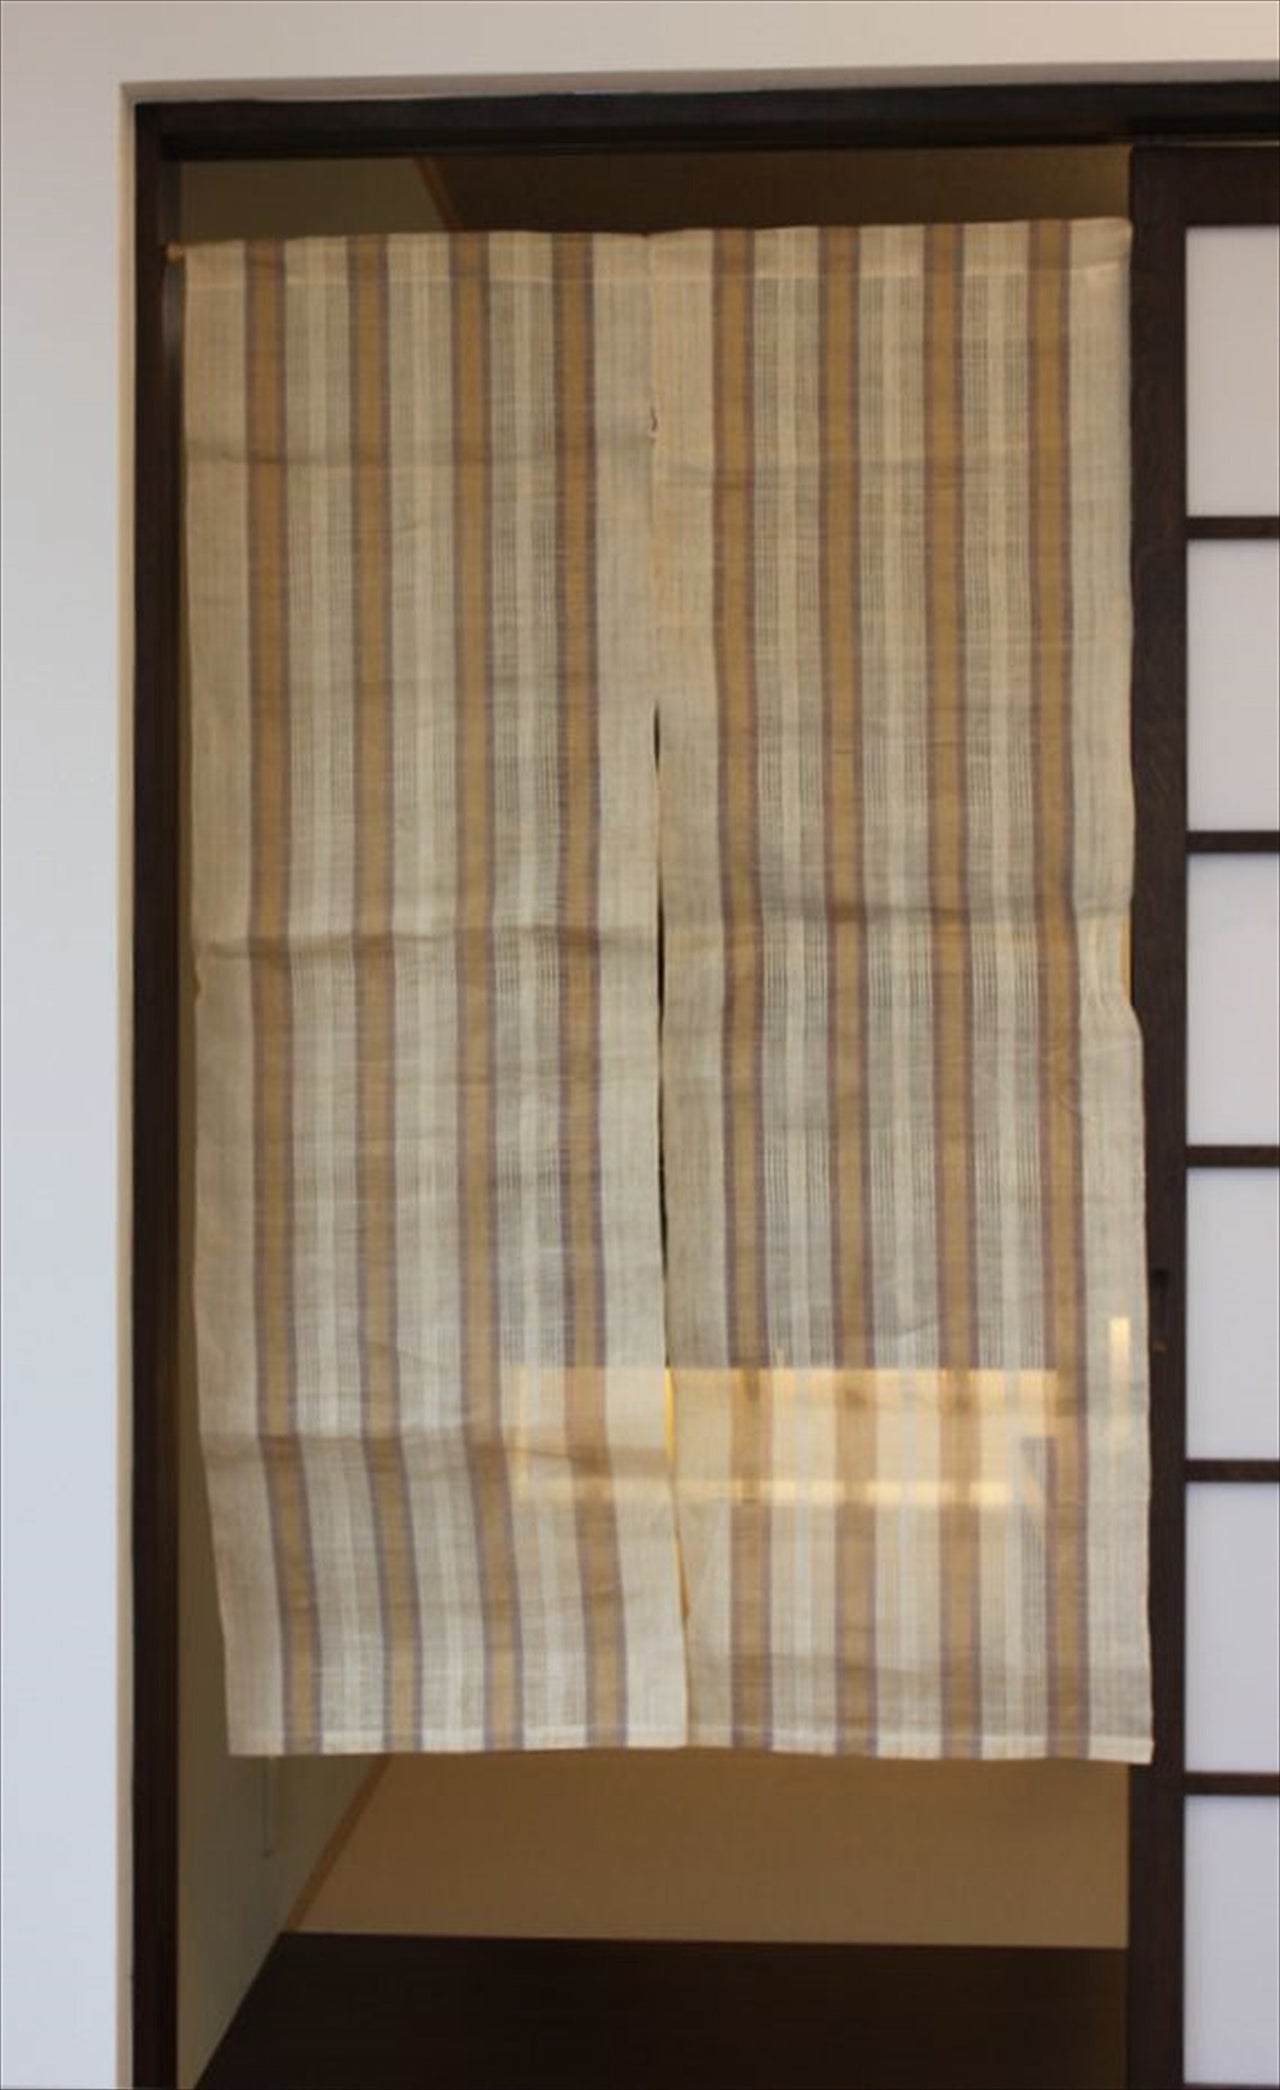 100％ Linen Hemp Japanese art Modern tapestry 90×150cm Noren door curtain Wall hanging